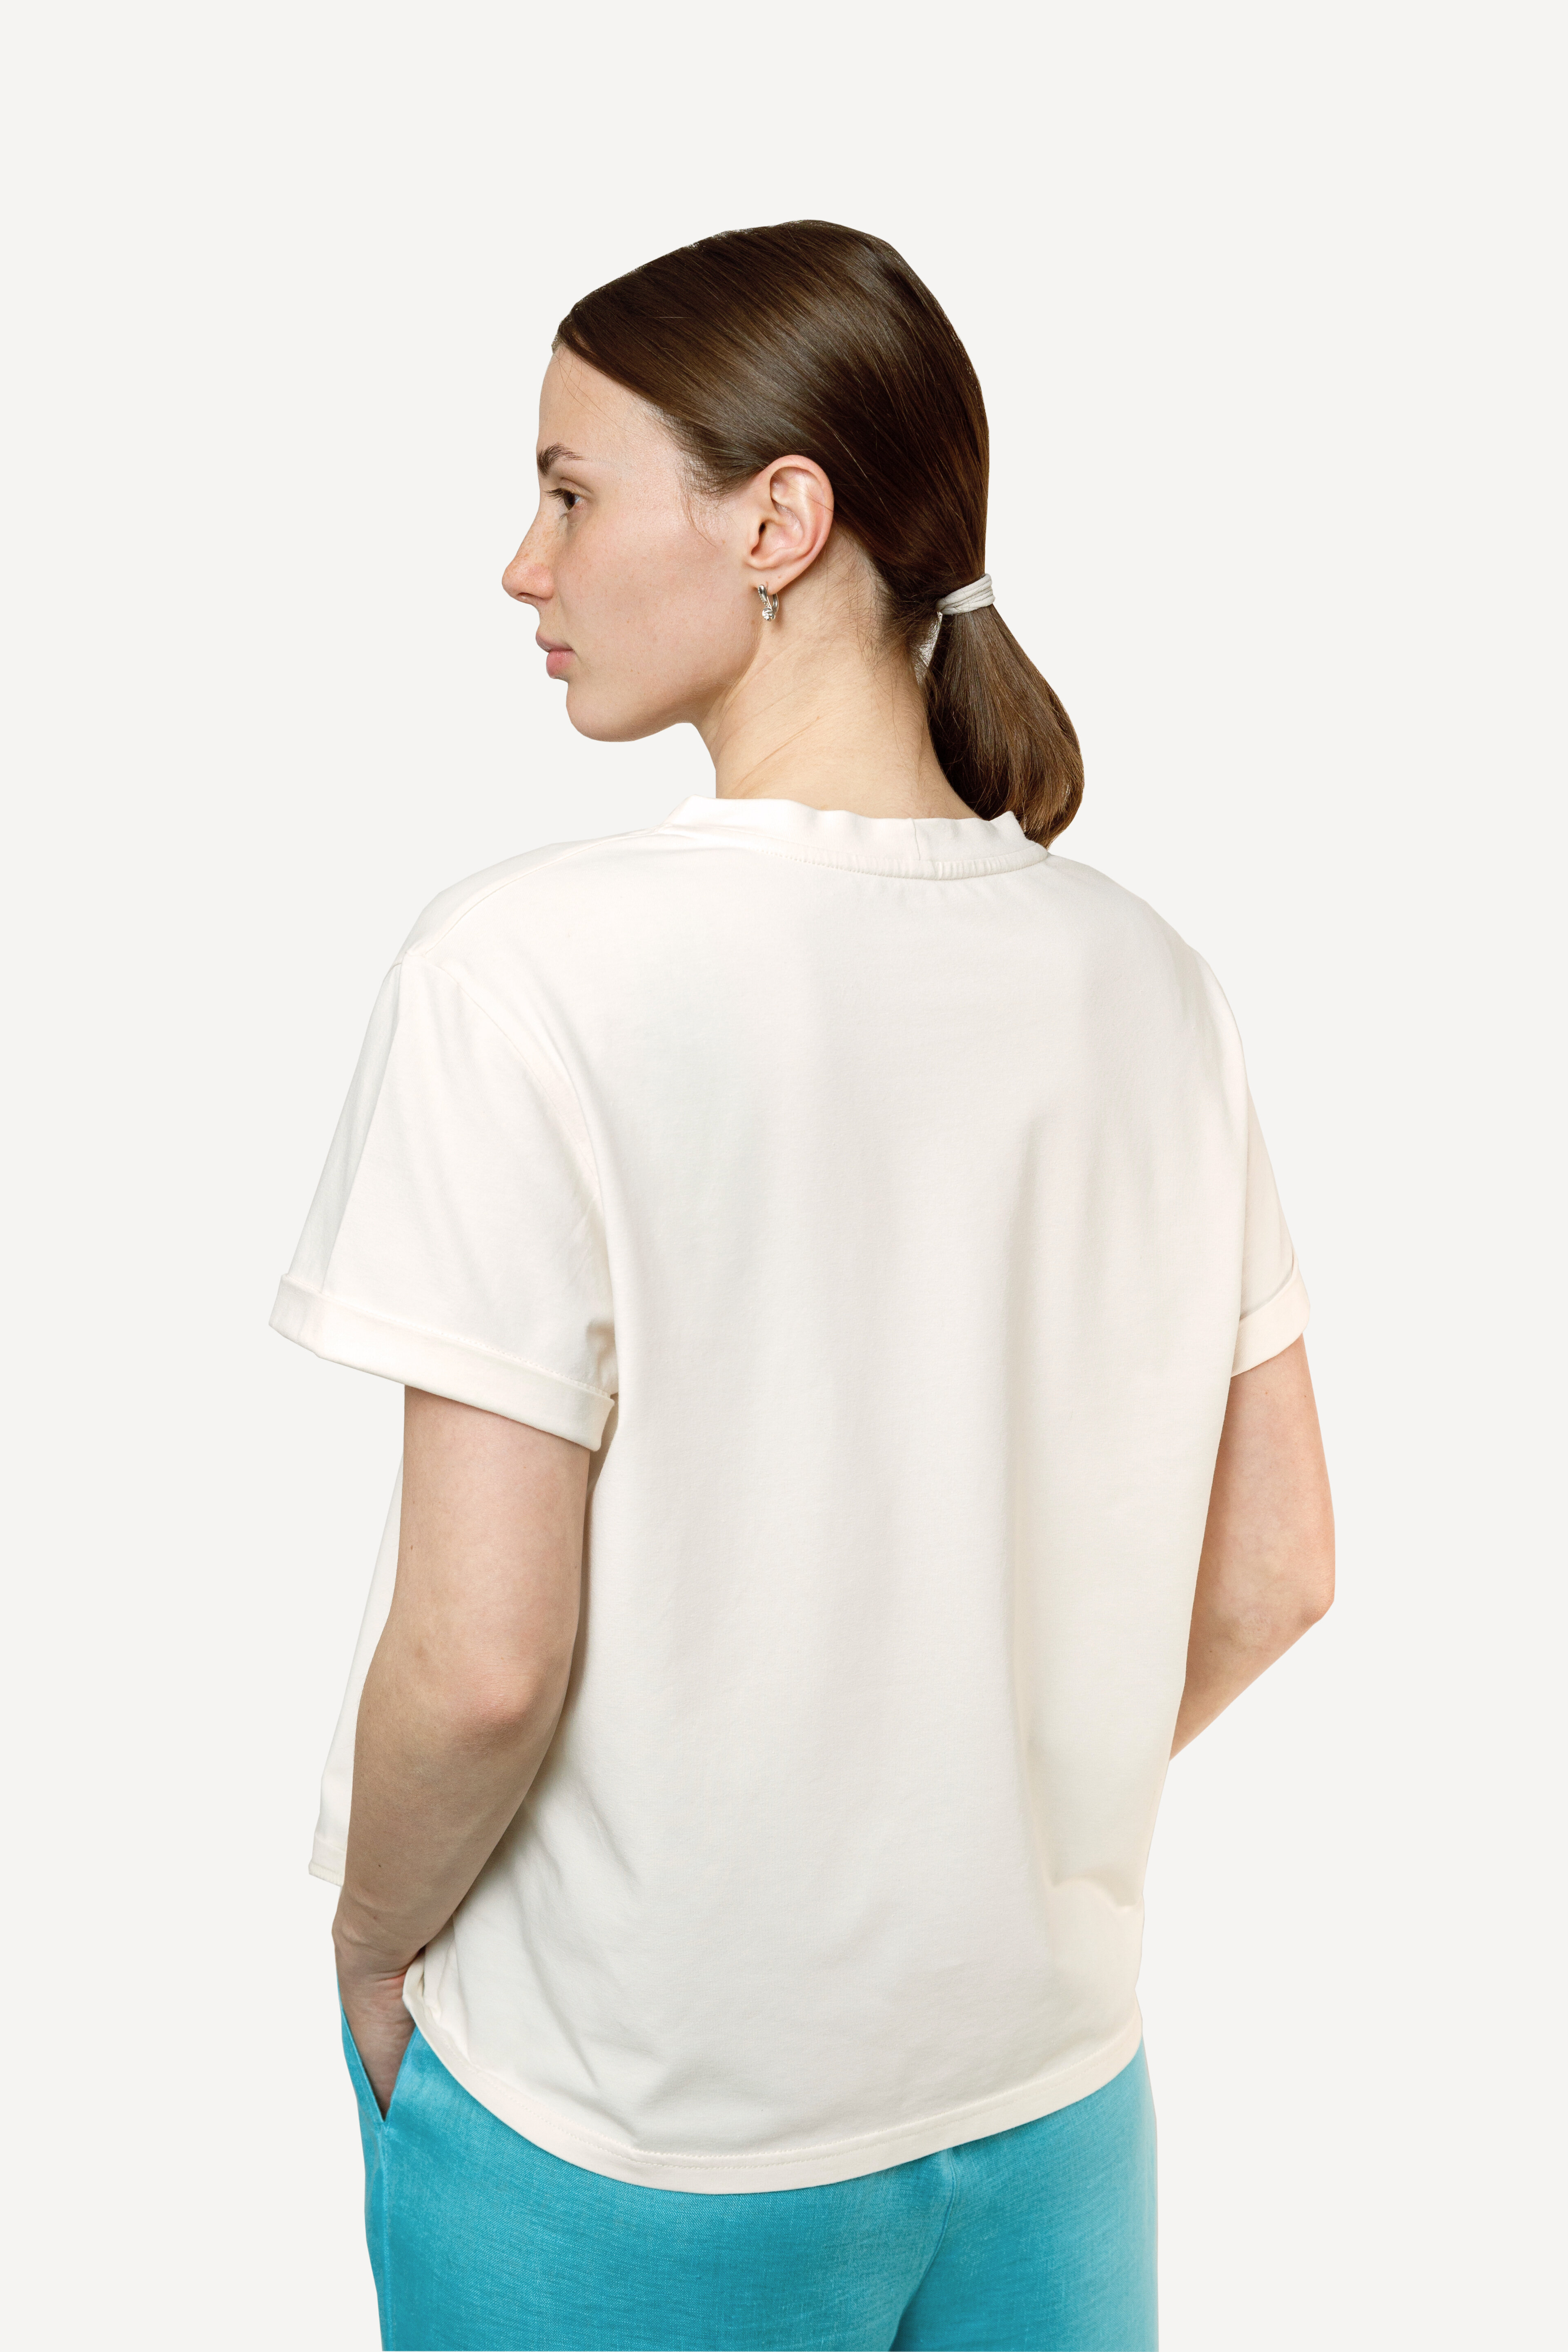 Женская футболка, размер S 42/44, премиальный хлопок, авторский принт "Нежная Сила", цвет молоко - фотография № 3